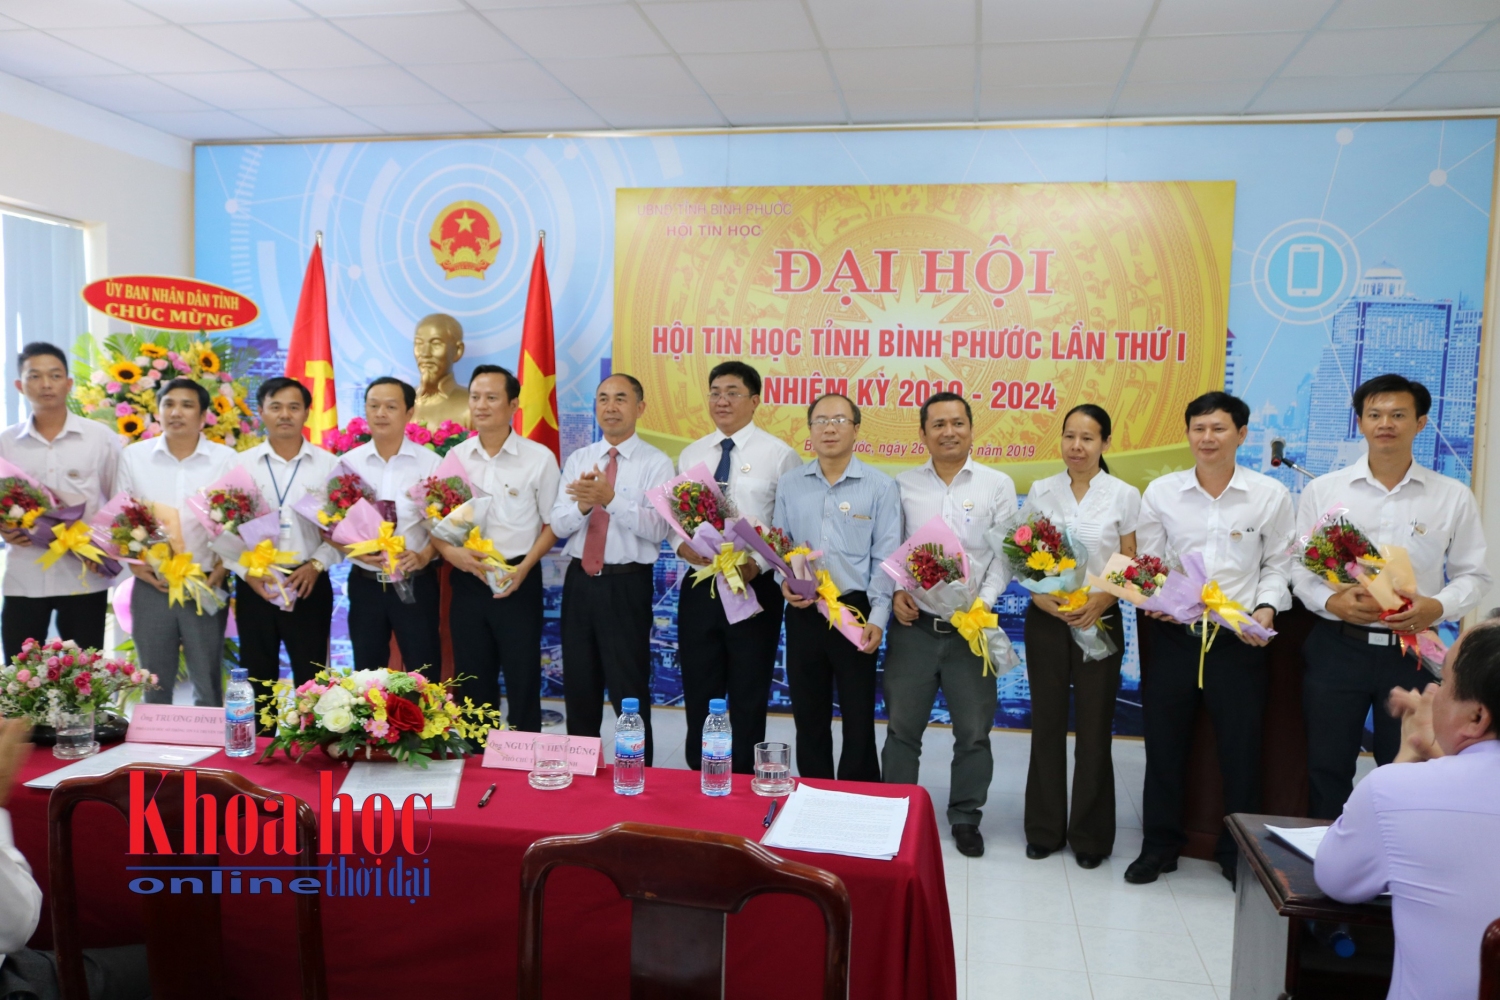 Phó Chủ tịch UBND tỉnh Nguyễn Tiến Dũng (thứ 7, từ trái sang) tặng hoa chúc mừng các Ủy viên Ban Chấp hành hội